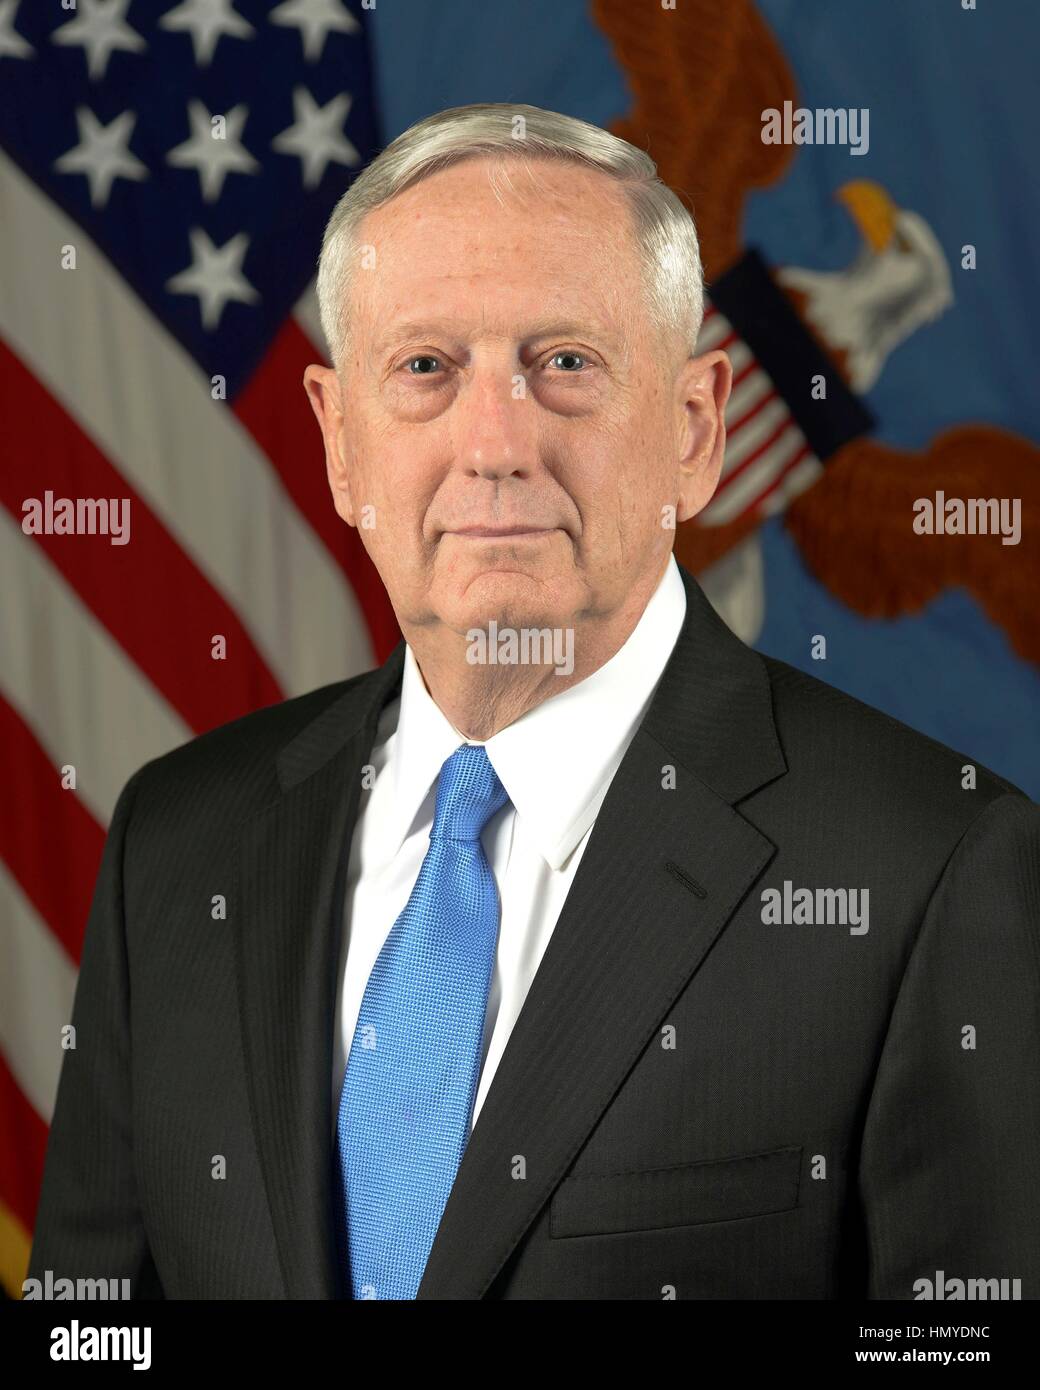 El recién nombrado Secretario de Defensa de Estados Unidos James Mattis Enero 20, 2017 en Washington, DC. Foto de stock